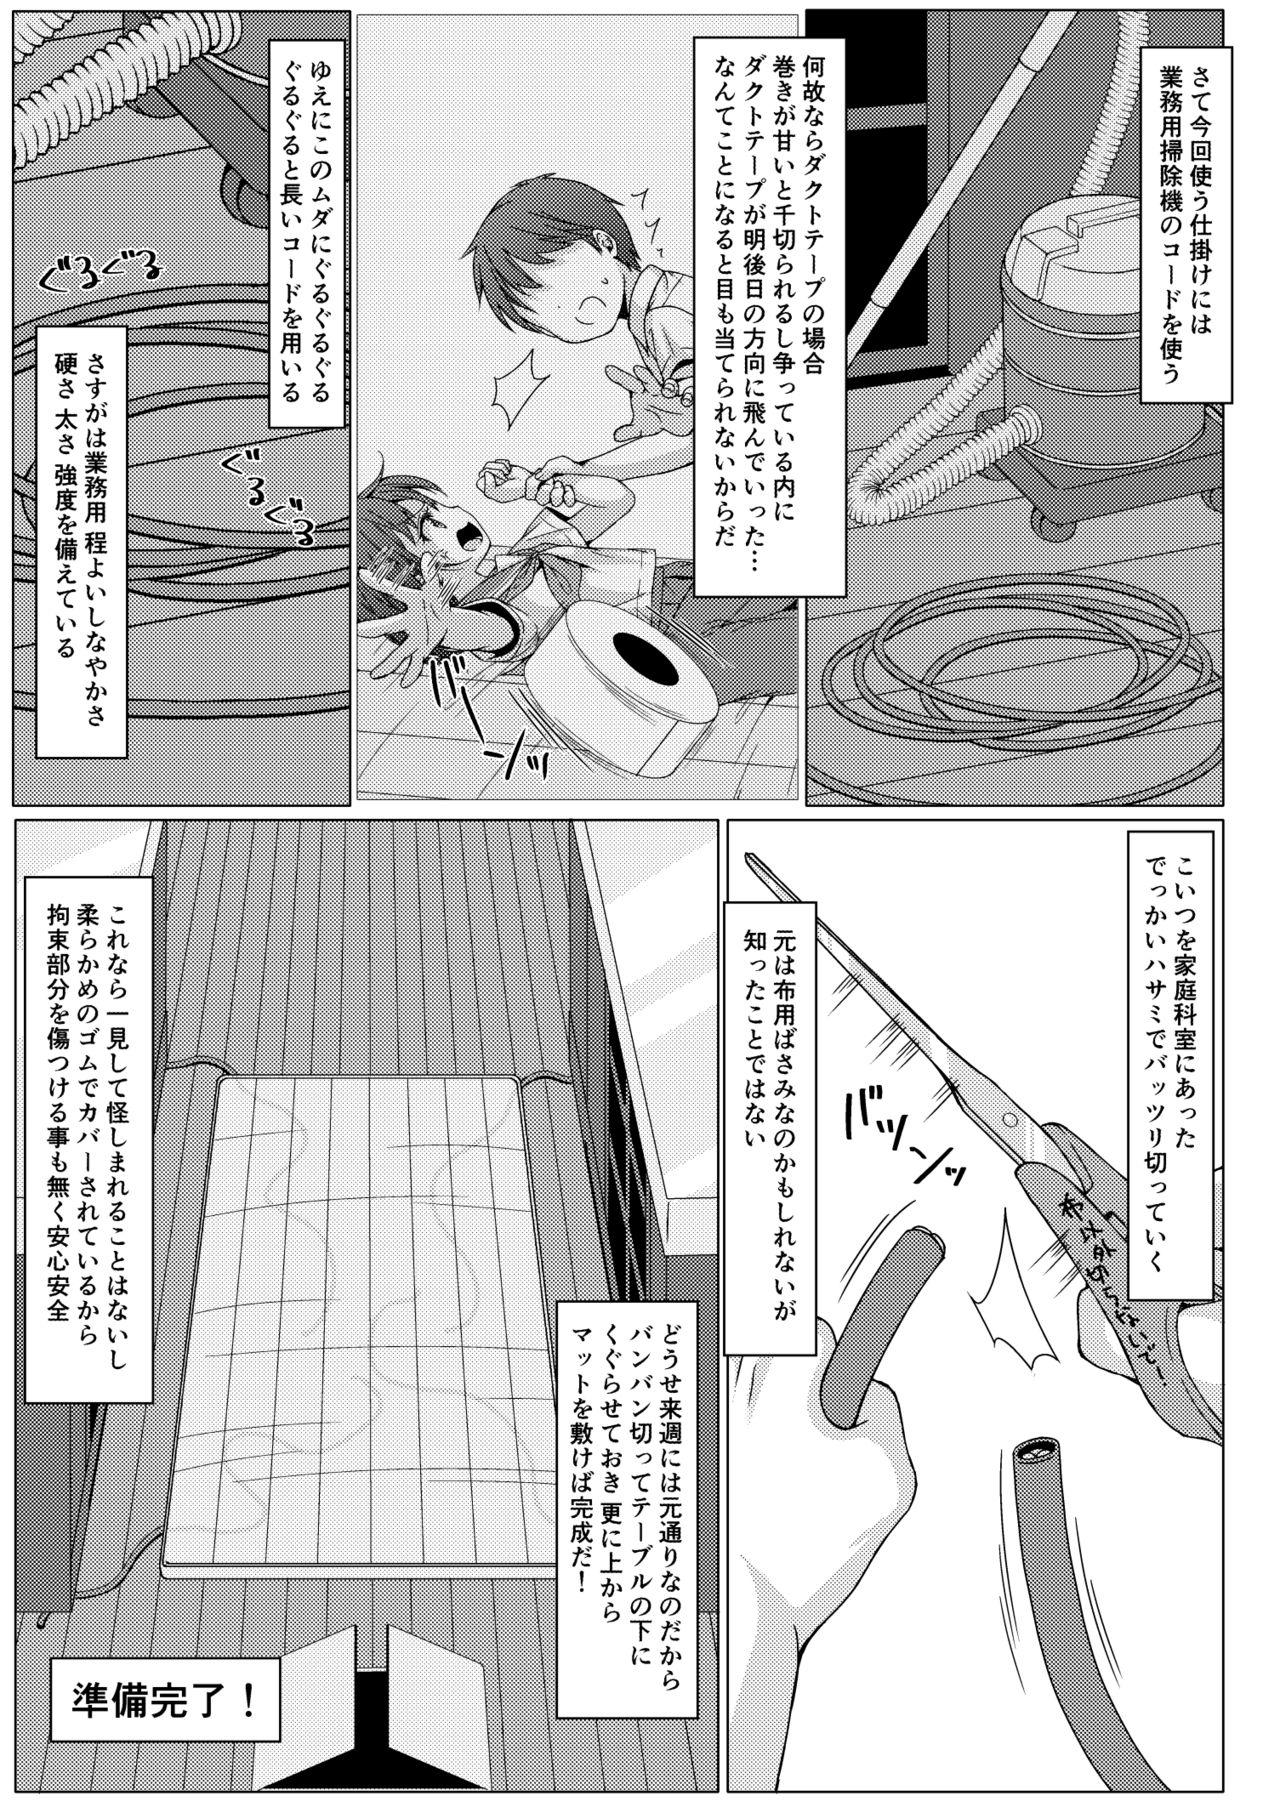 Boobies Isshuukan de Mugen Loop Shiteru to Kigatsuita kara, Kounai ni Yaribeya Tsukutta! 2 - Original Grandmother - Page 4